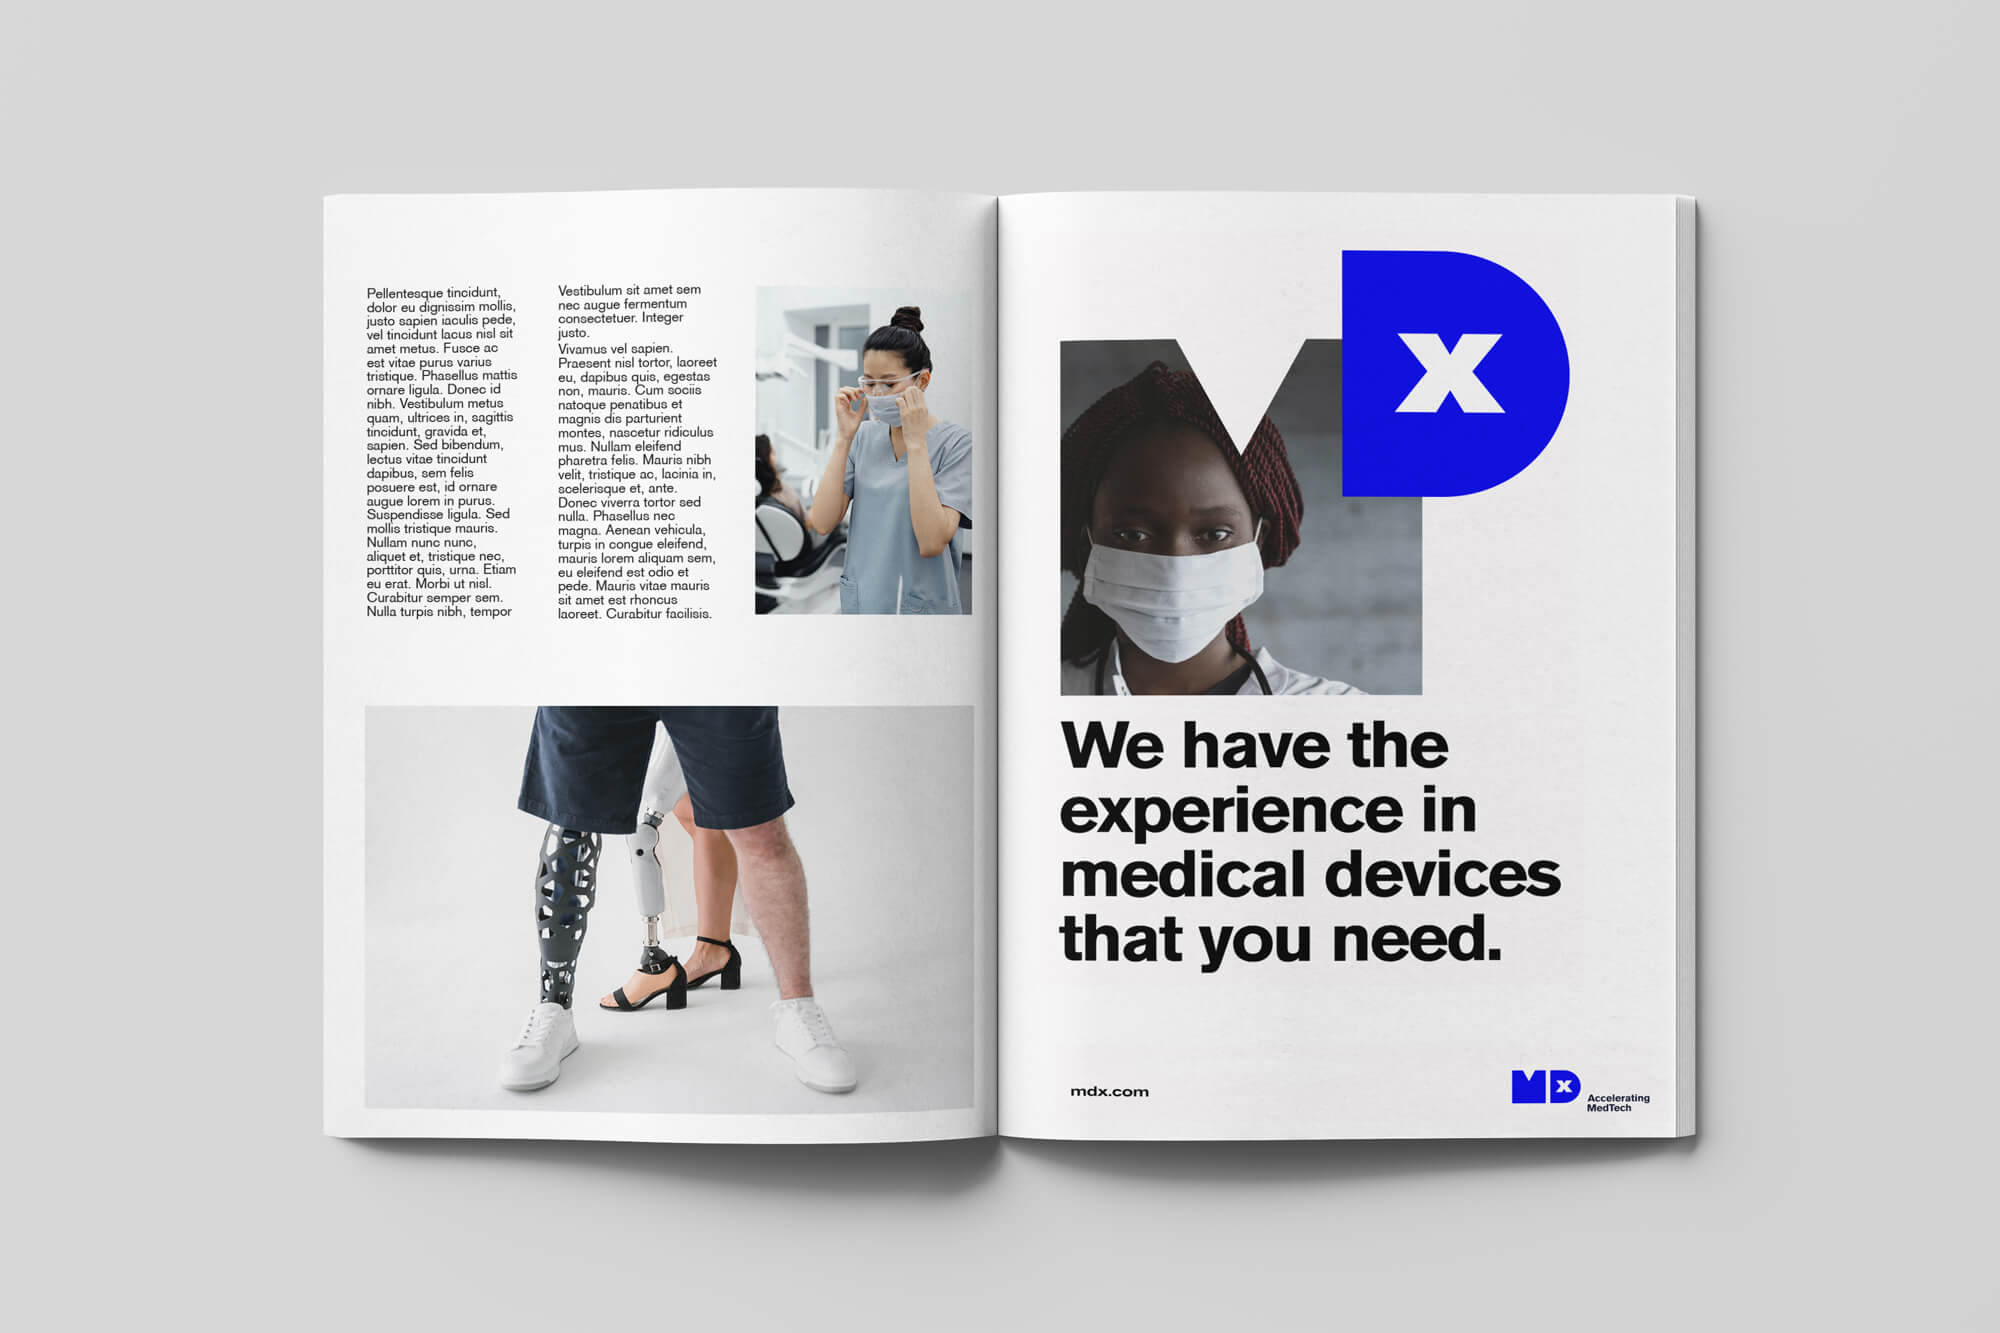 Diseño y desarrollo de identidad visual corporativa para MDx. Magazine.